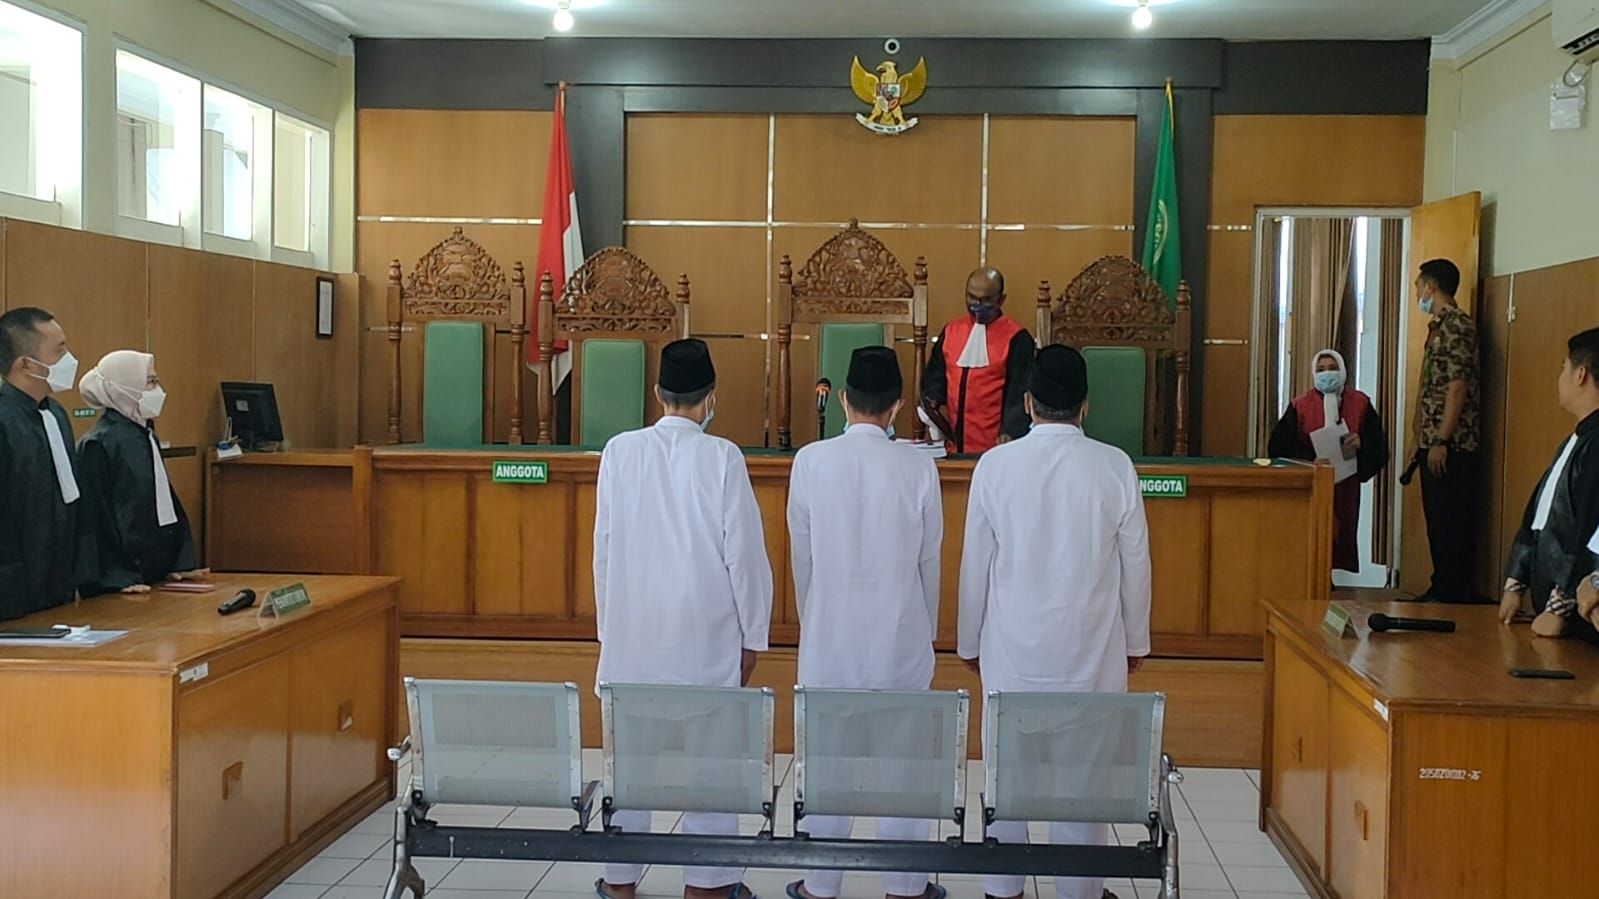 Tiga jenderal NII saat mengikuti persidangan dengan agenda pembacaan putusan di Pengadilan Neger (PN) Garut, Jalan Merdeka, Kecamatan Tarogong Kidul, Kabupaten Garut, Kamis 23 Juni 2022.